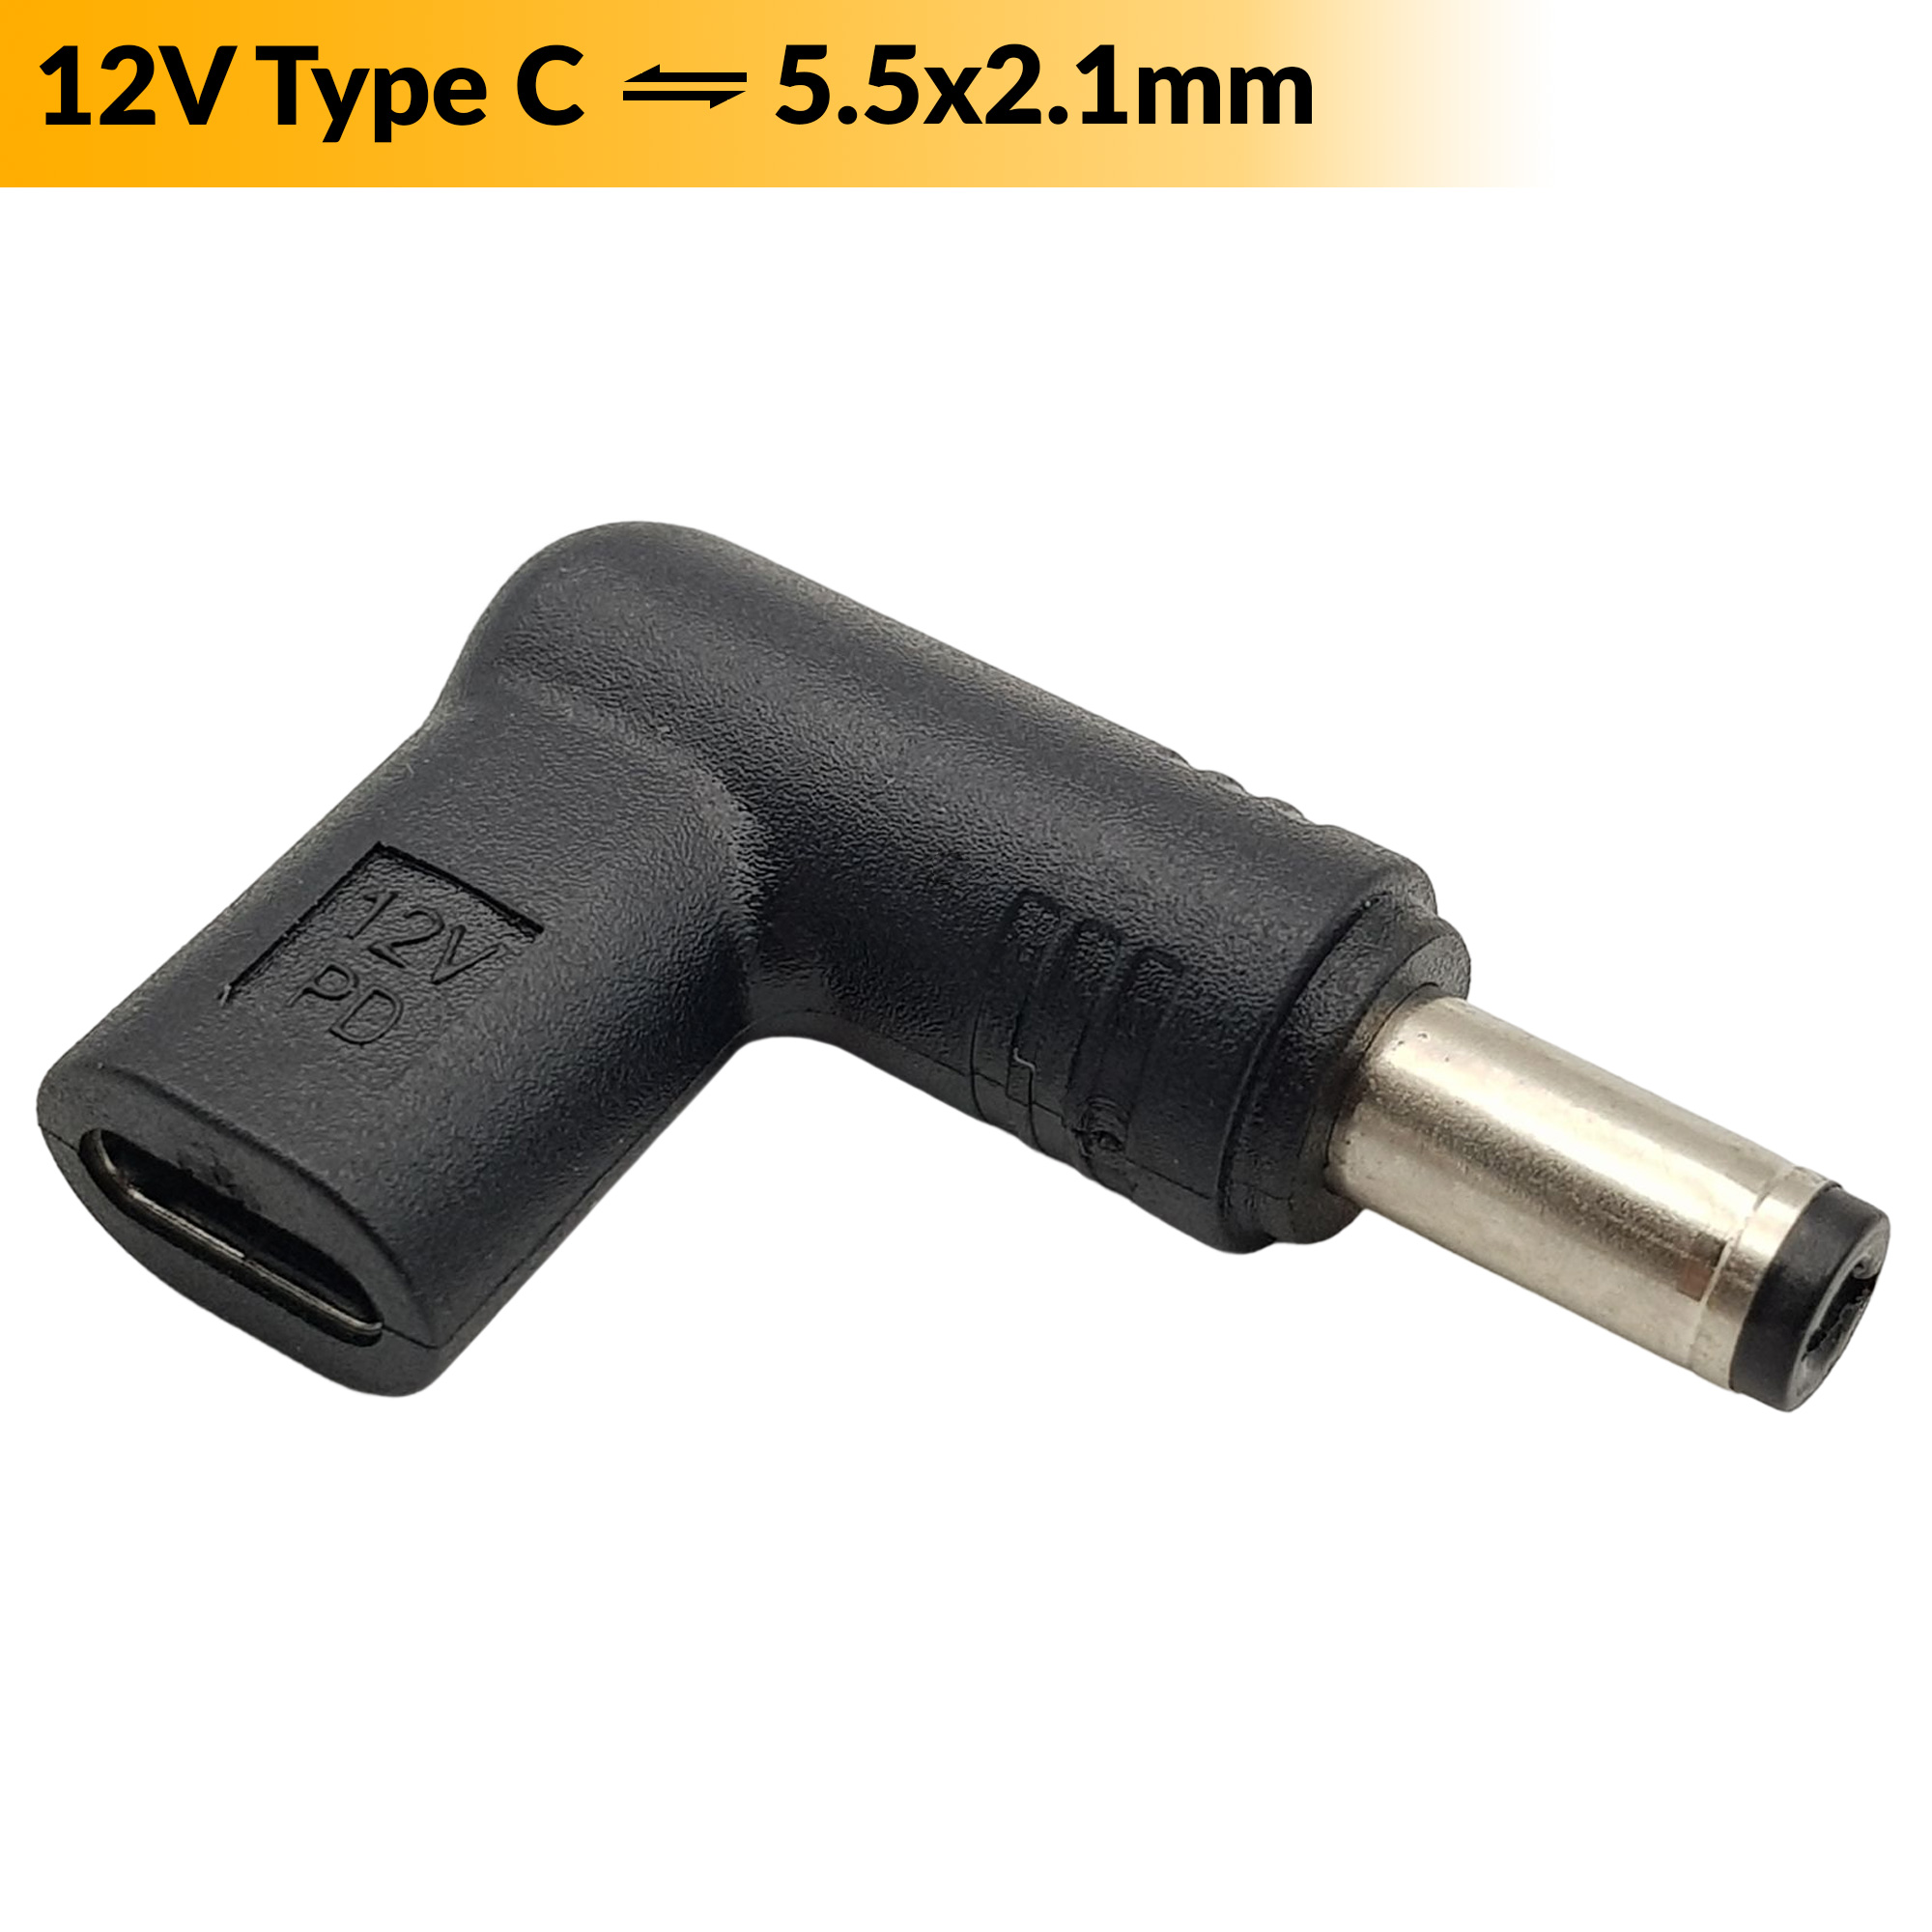 Đầu chuyển đổi USB Type C sang Jack DC 5.5x2.1mm (12v)